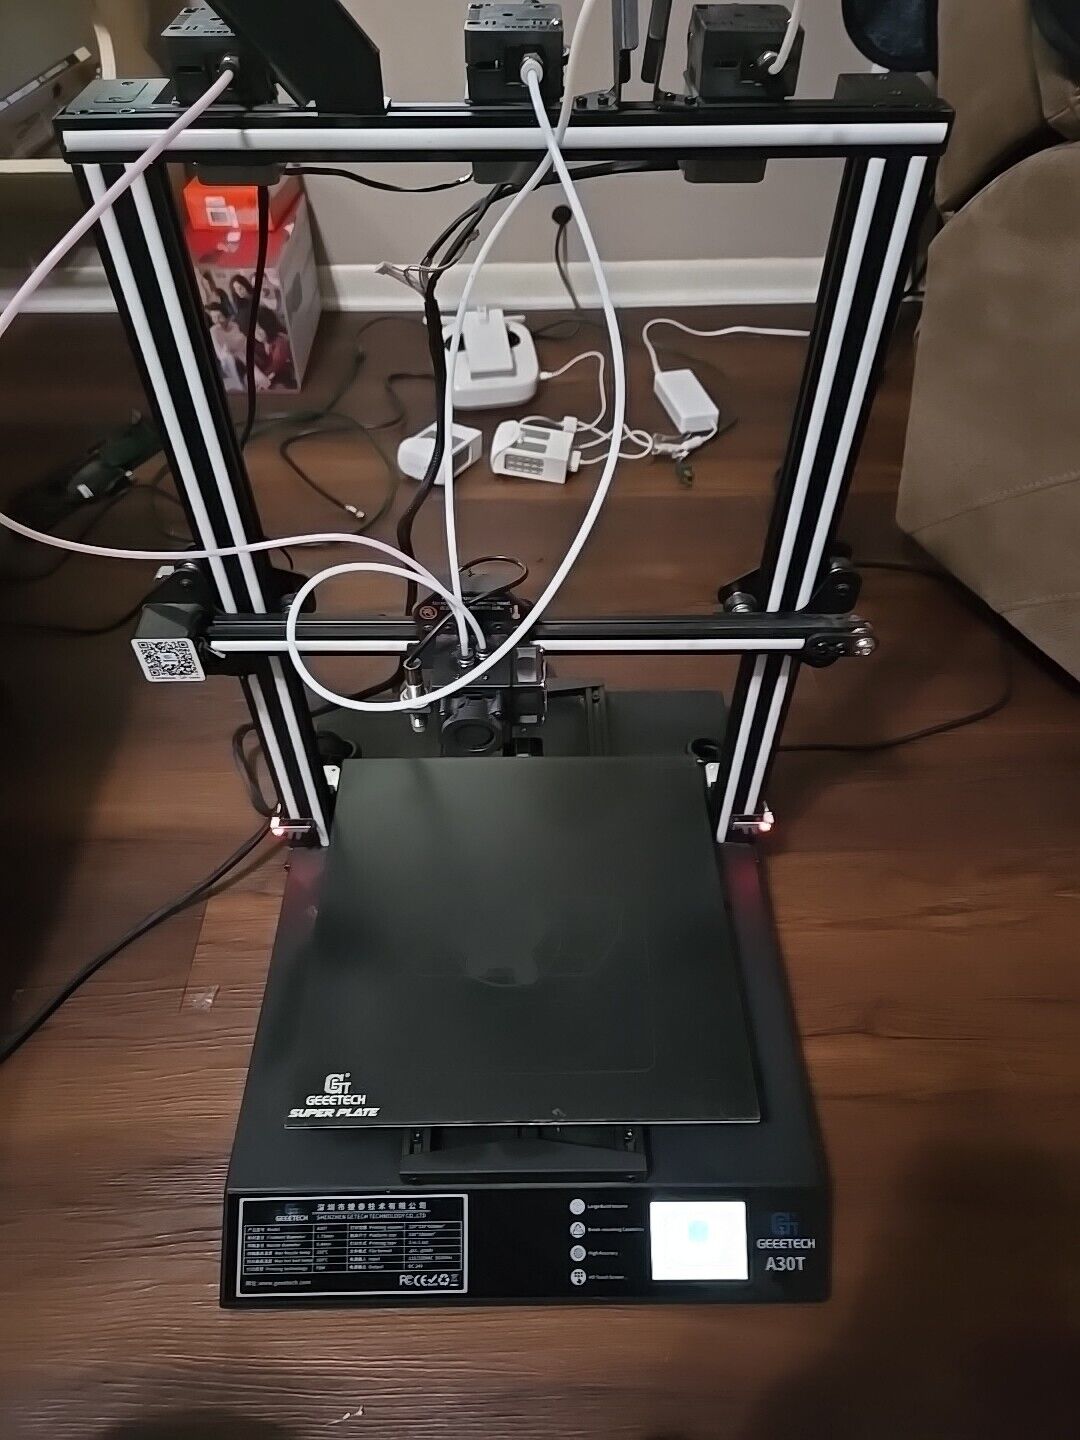 Geetech A30T 3D Printer